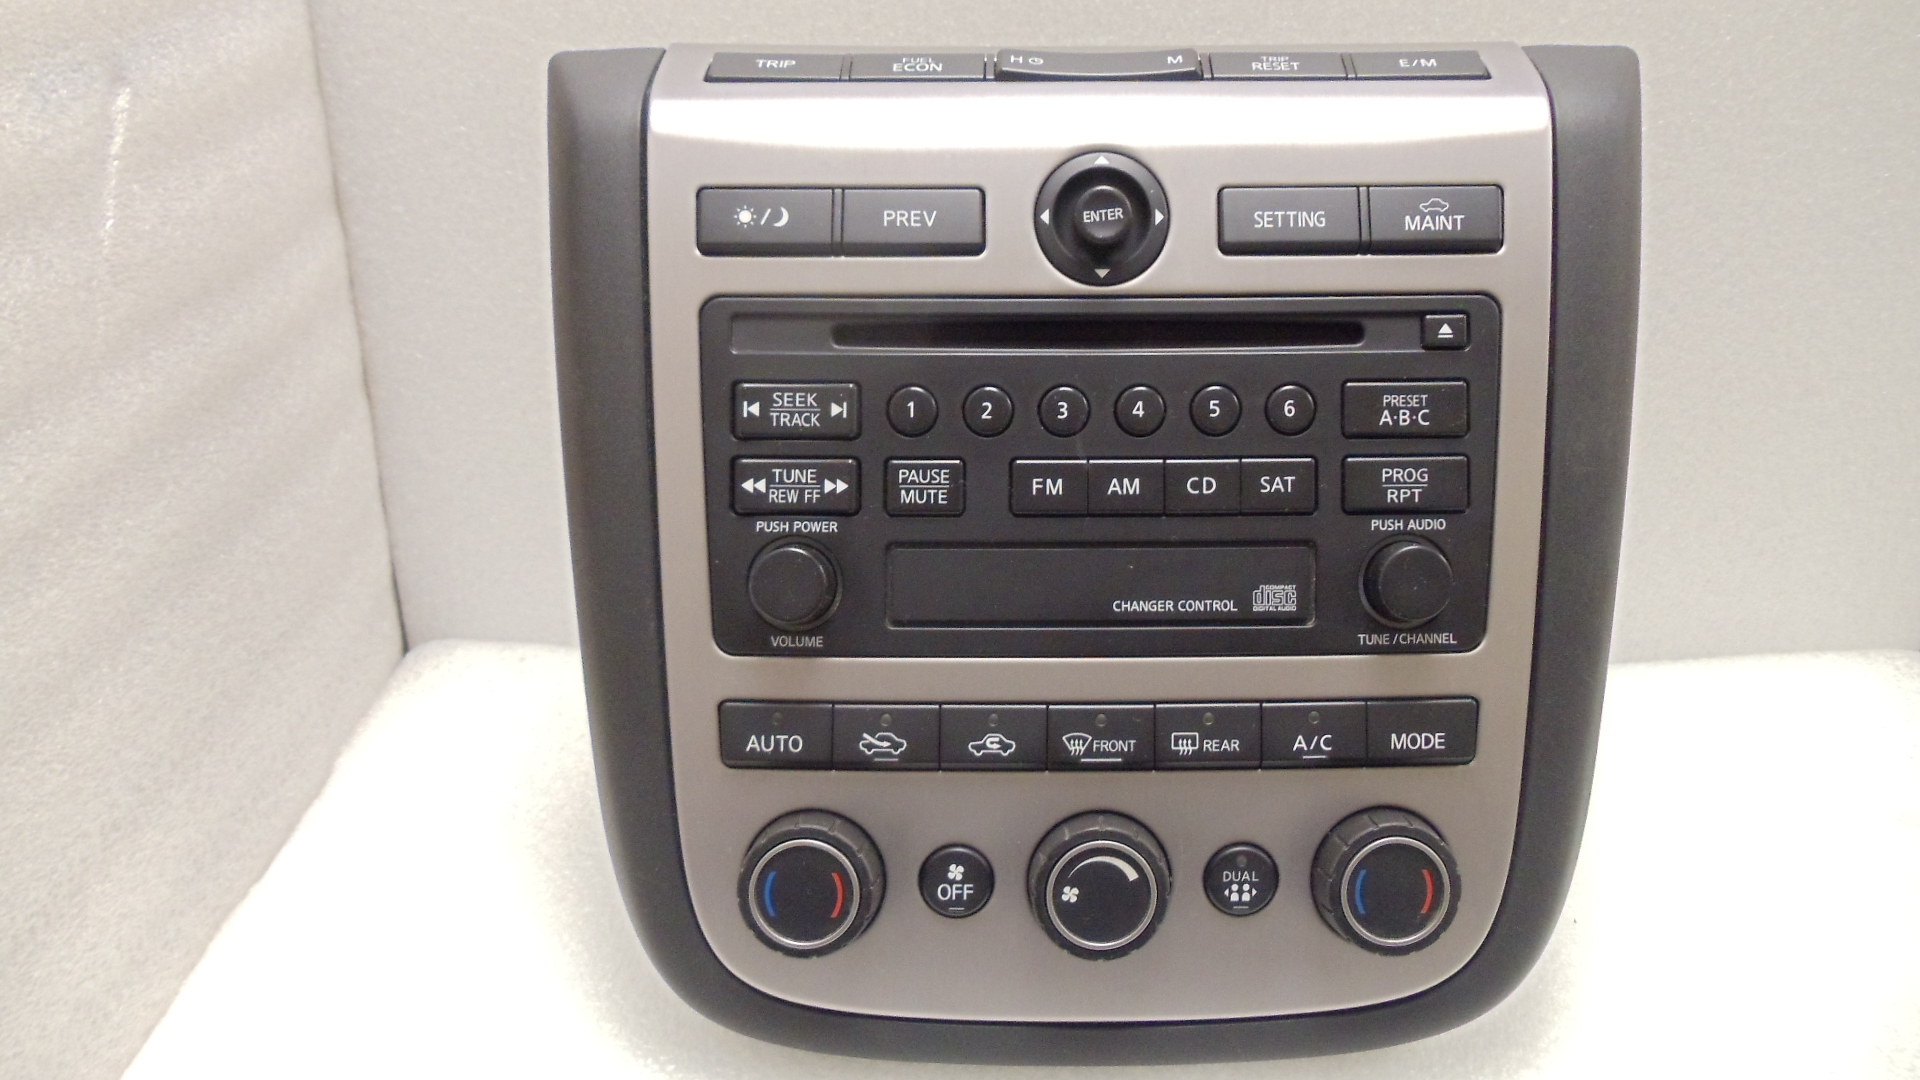 2004 Nissan murano cd player